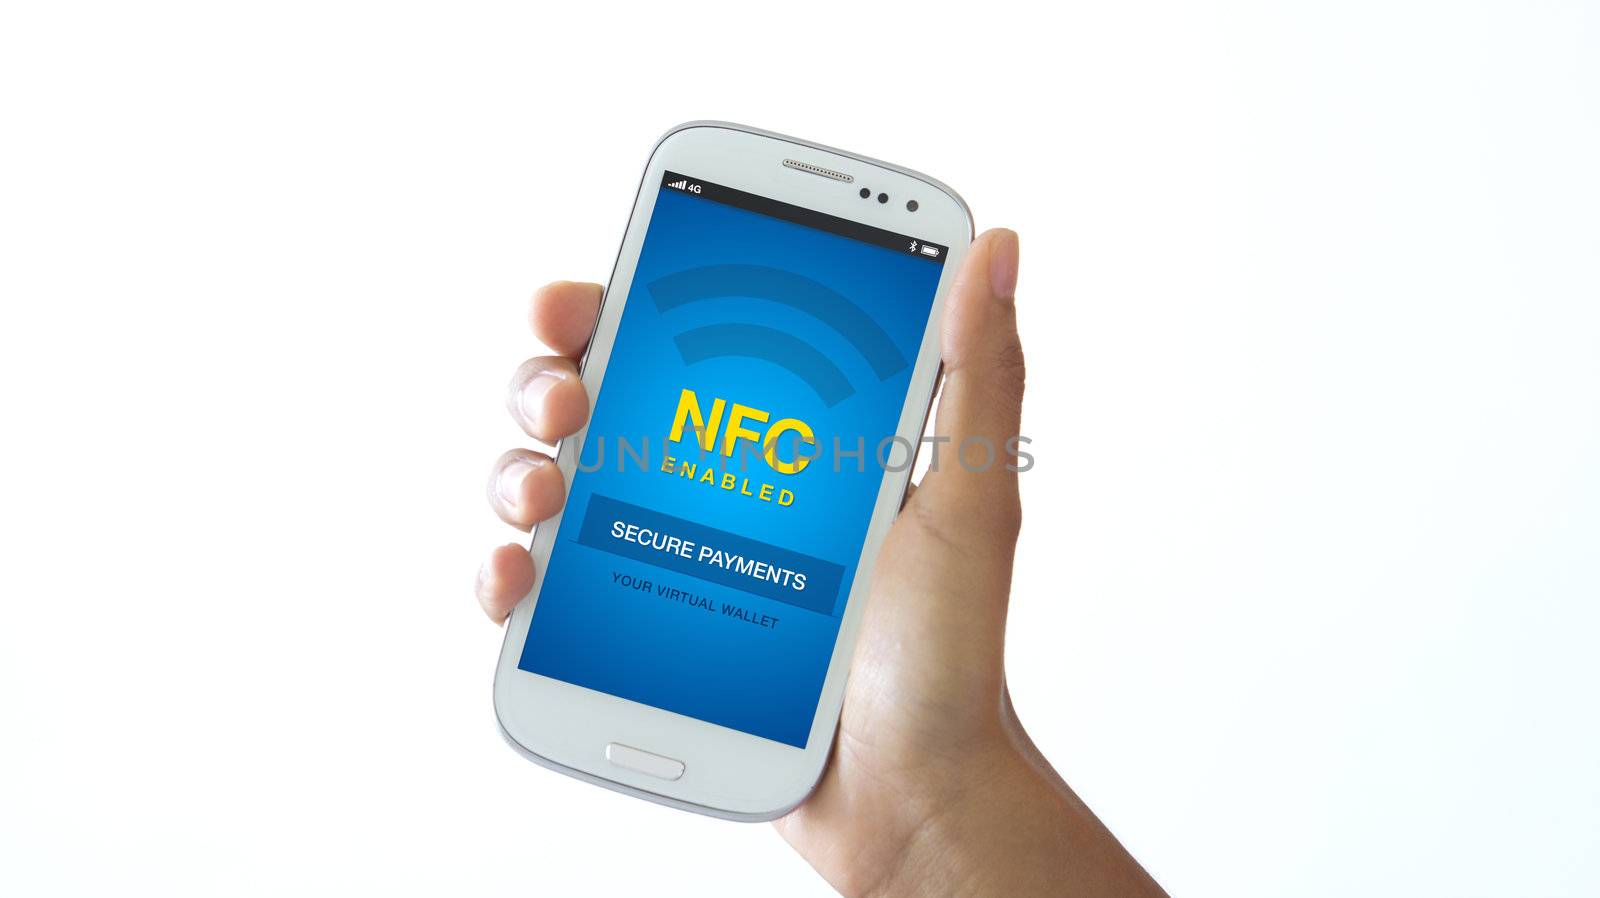 NFC enabled mobile phone by kbuntu